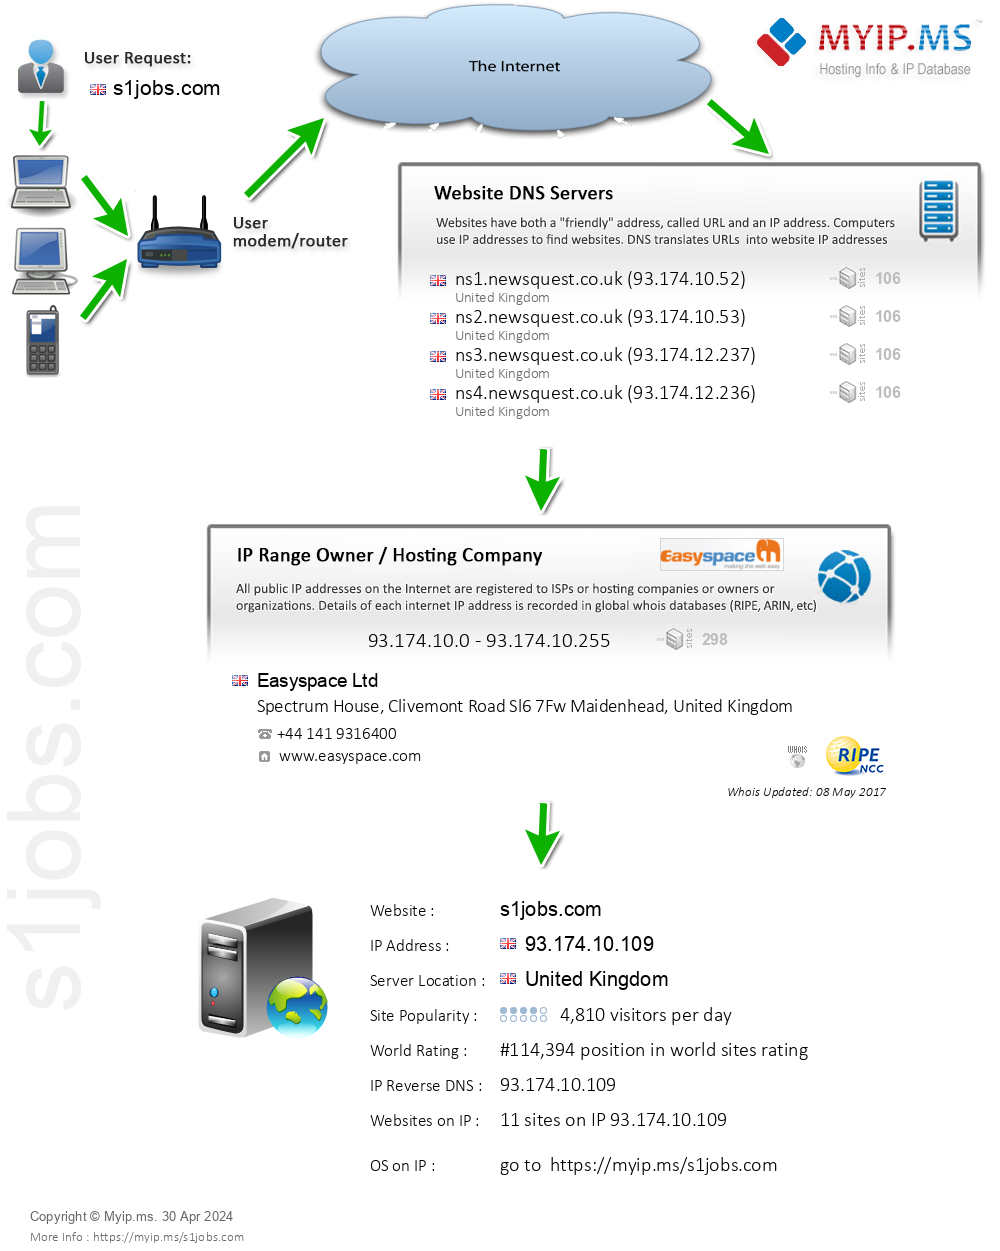 S1jobs.com - Website Hosting Visual IP Diagram